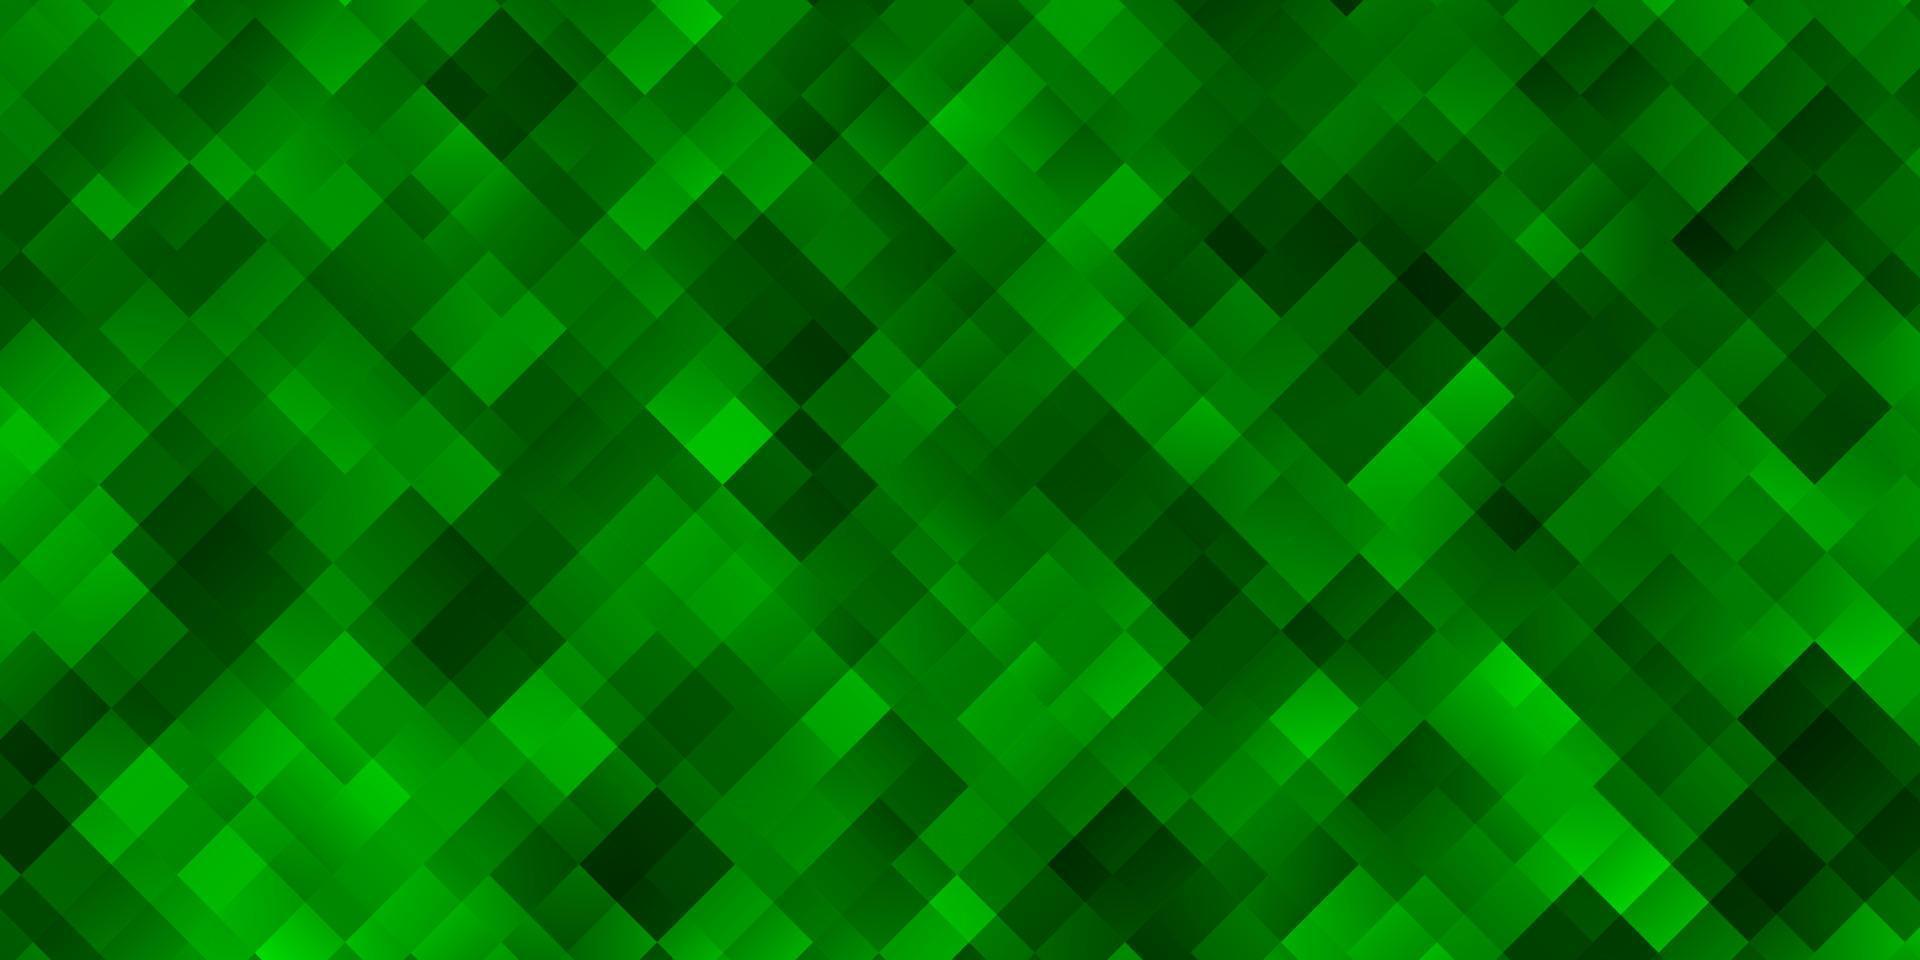 sfondo vettoriale verde chiaro in stile poligonale.